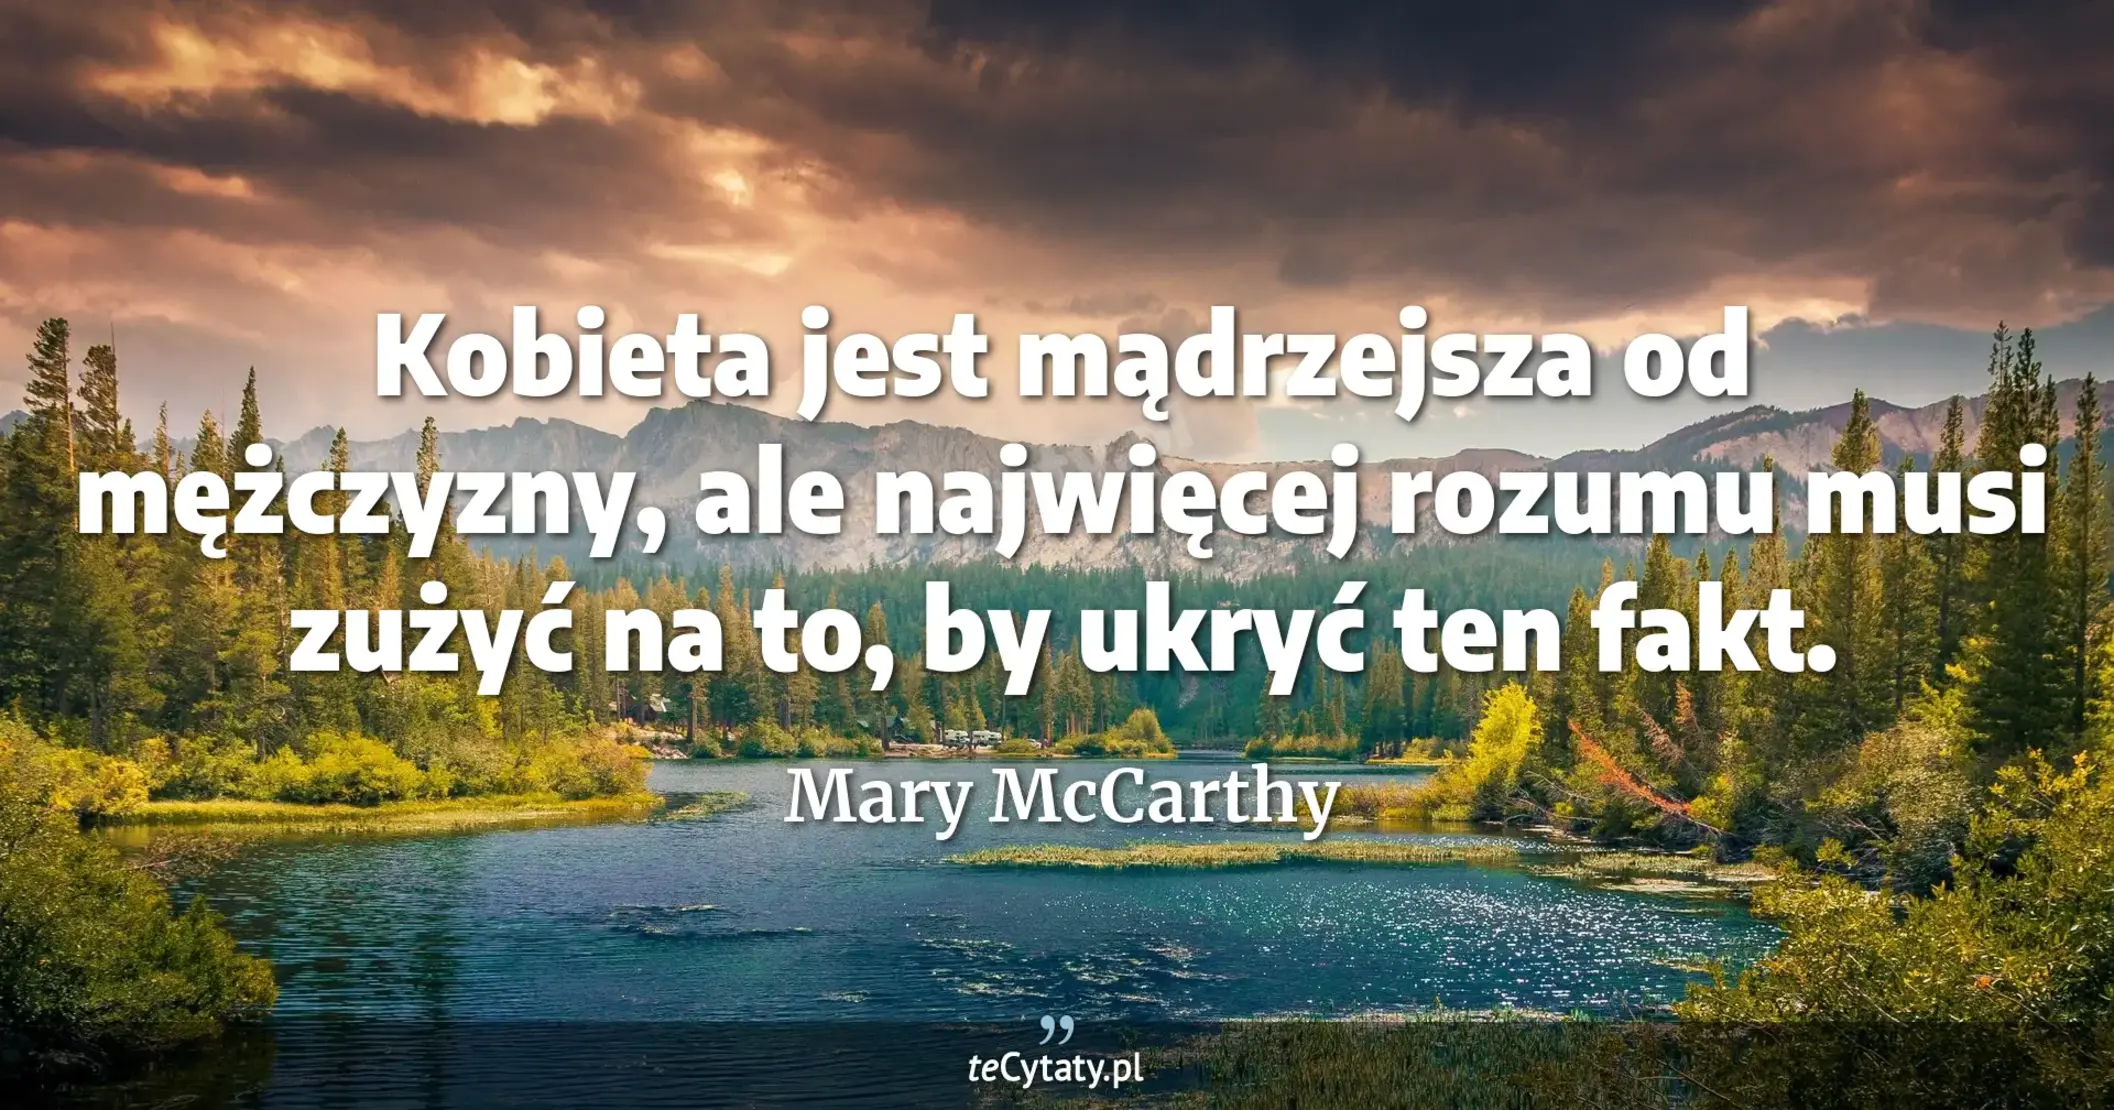 Kobieta jest mądrzejsza od mężczyzny, ale najwięcej rozumu musi zużyć na to, by ukryć ten fakt. - Mary McCarthy